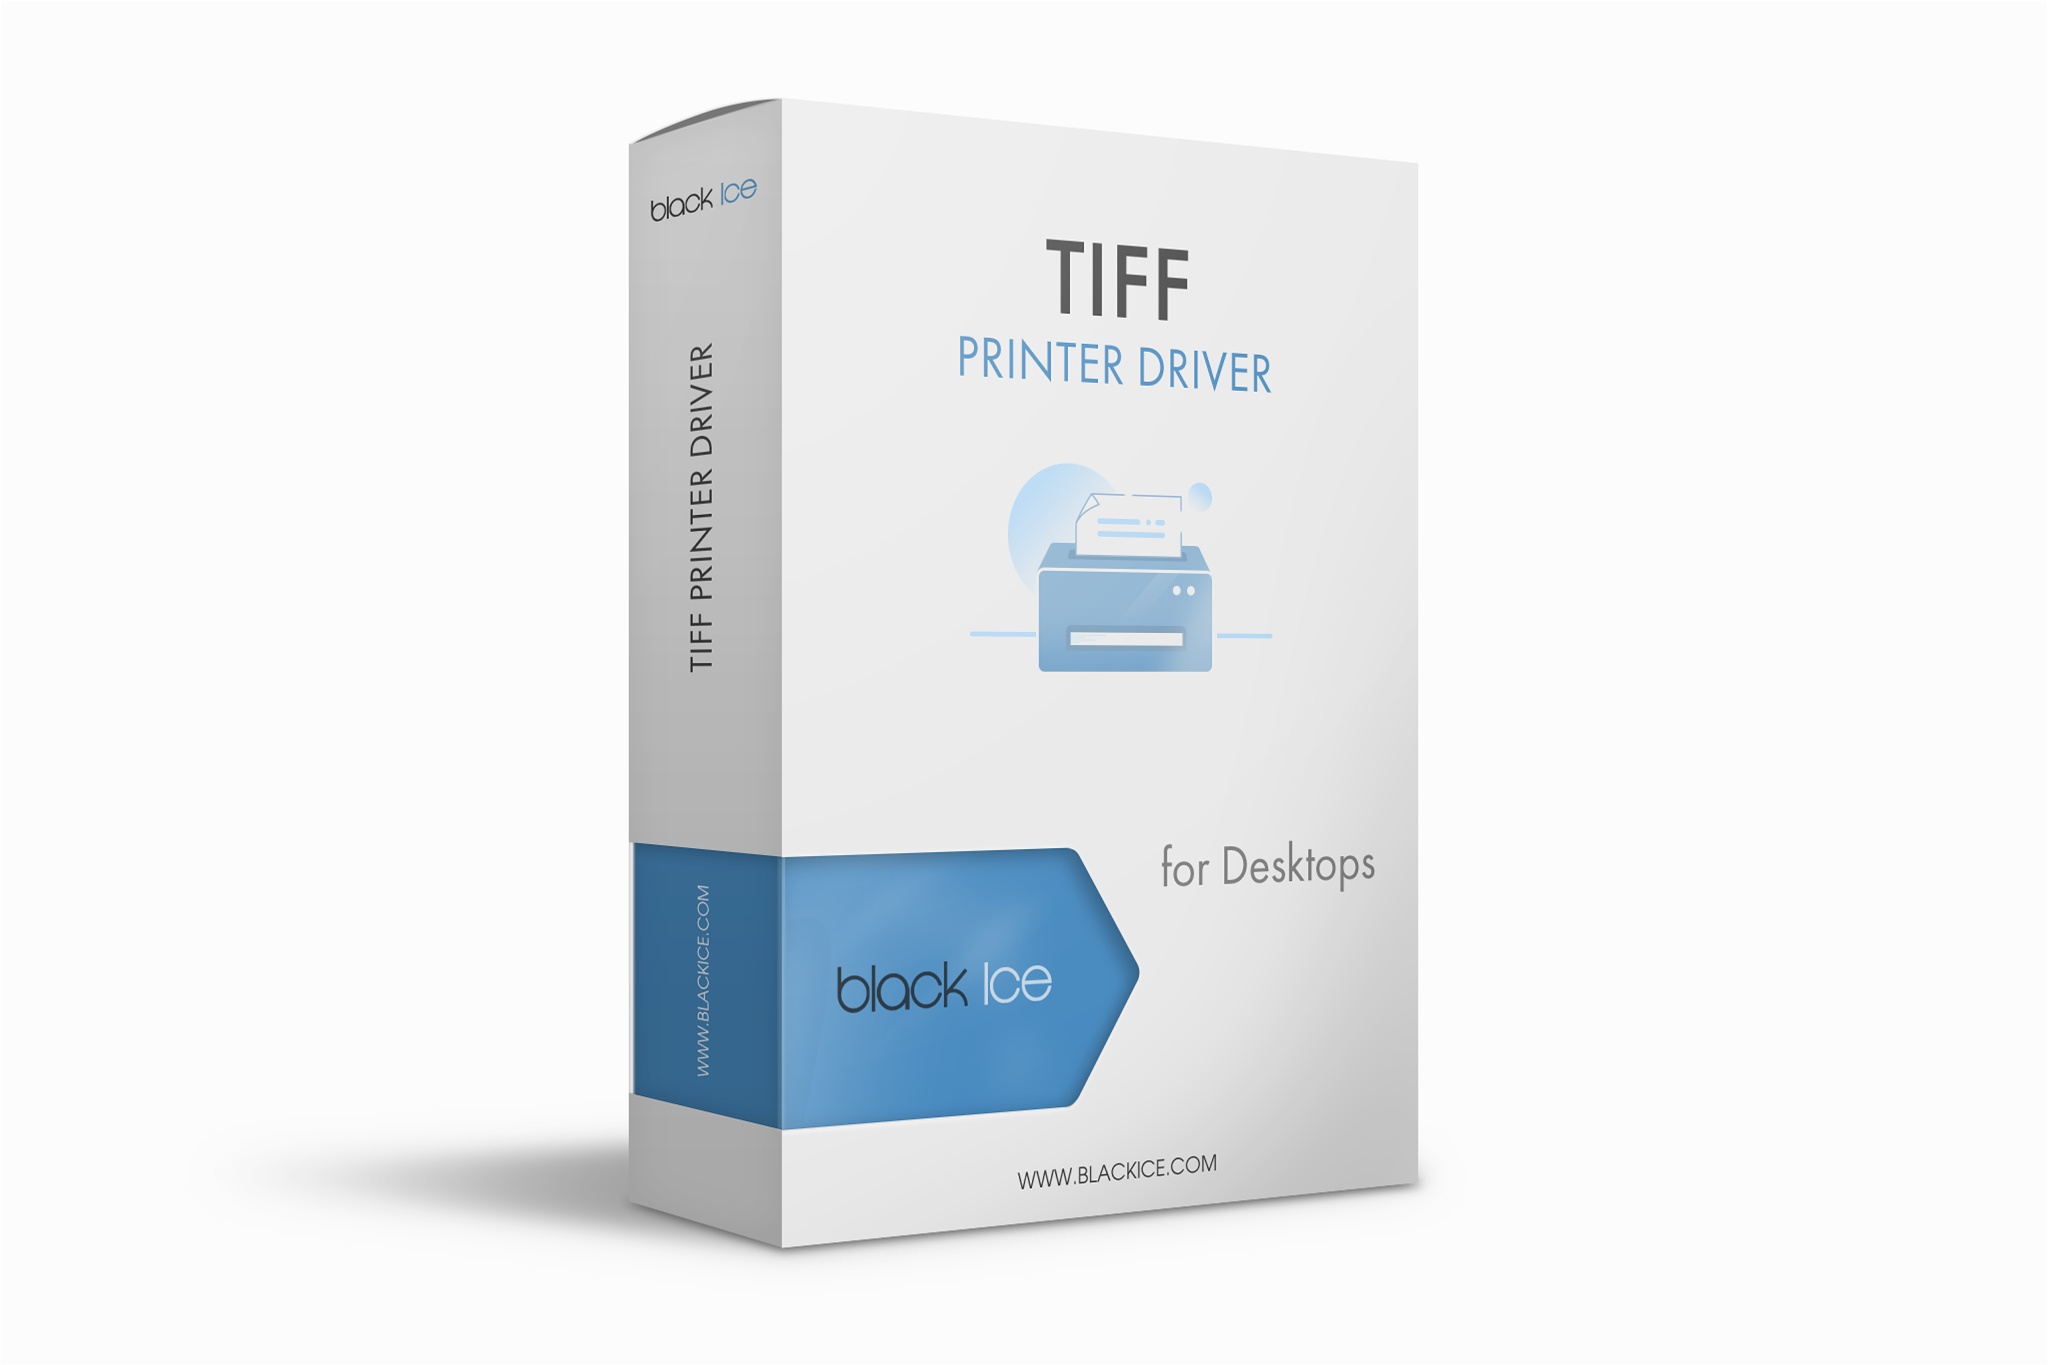 TIFF/Monochrome Printer Driver Subscription (50 Licenses)